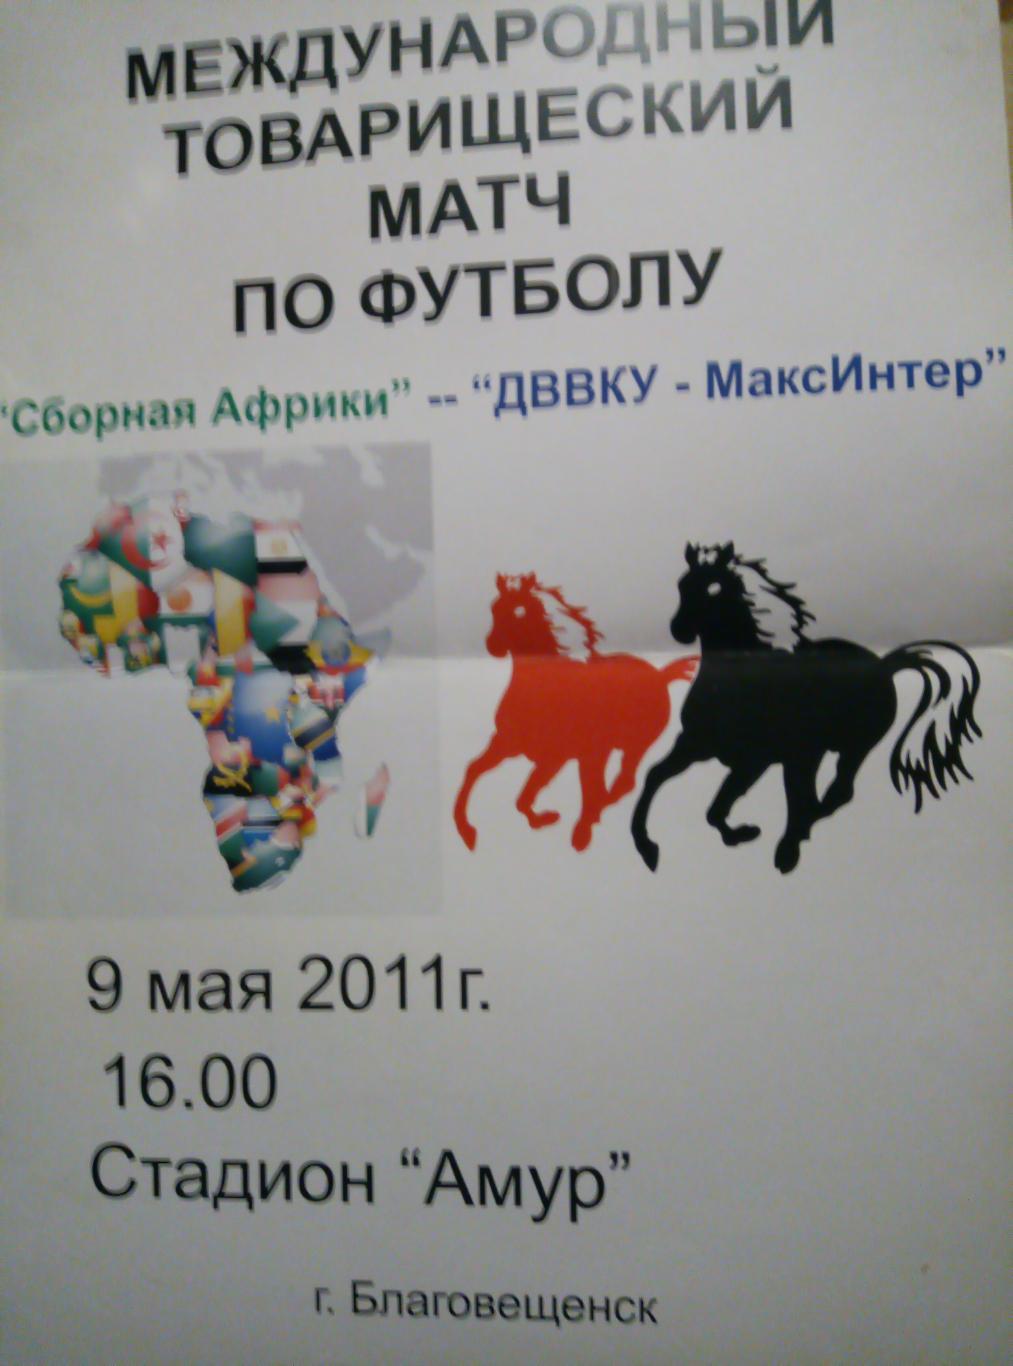 Афиша сборная Африки - ДВВКУ-МаксИнтер Благовещенск - 09.05.2011 (размер А-3)